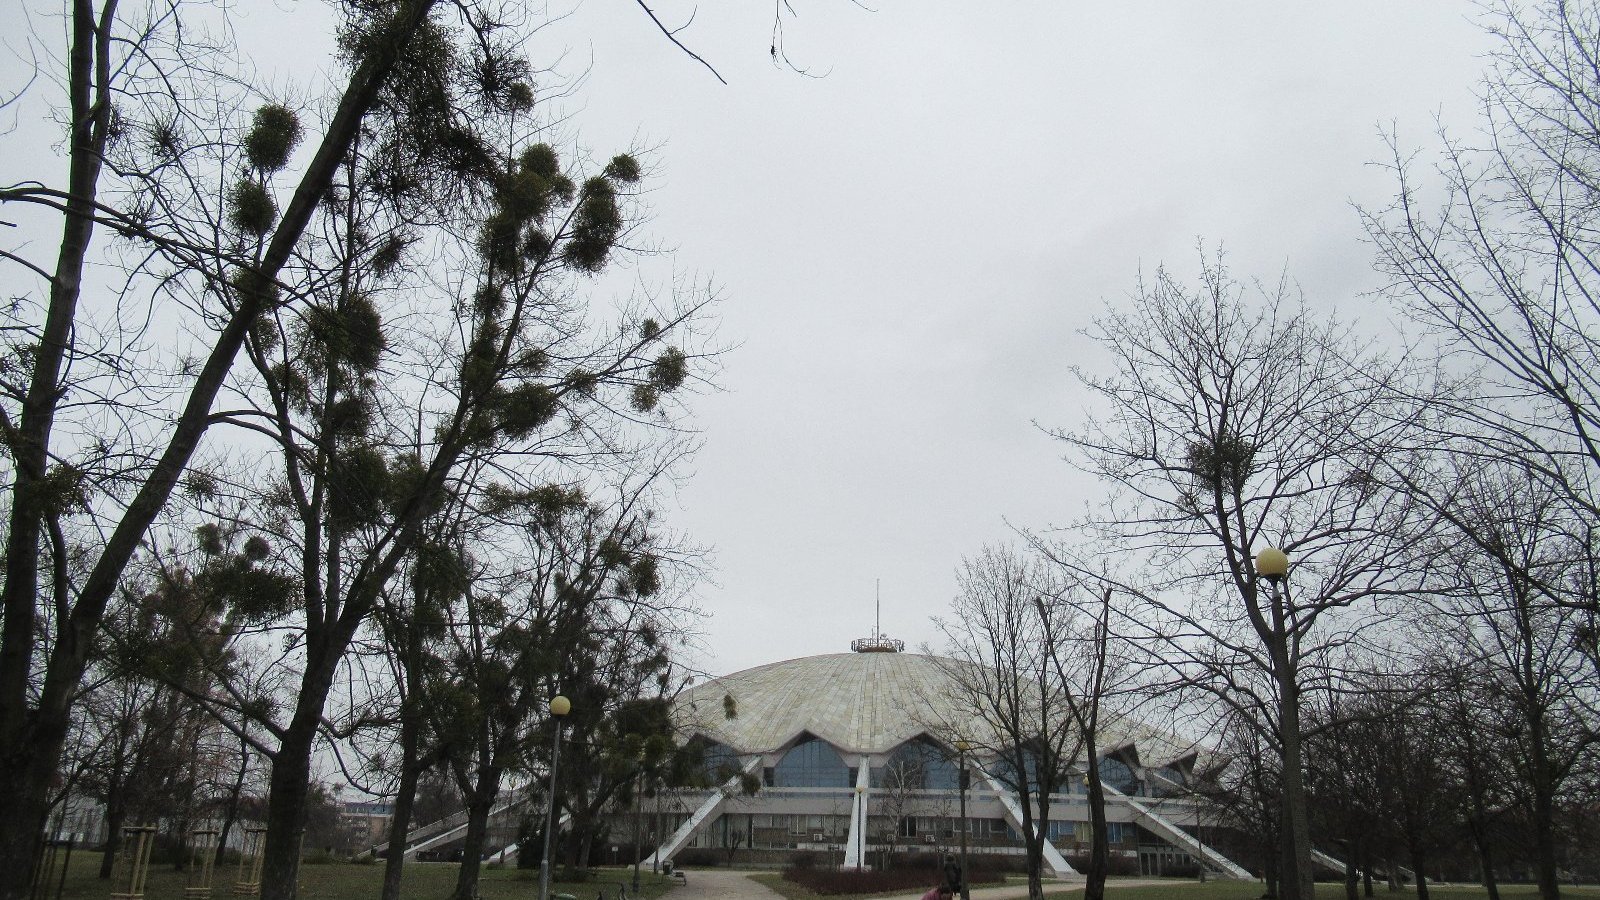 Zdjęcie przedstawia drzewa. w zimowej scenerii - bez liści. W tle widać halę Arena.